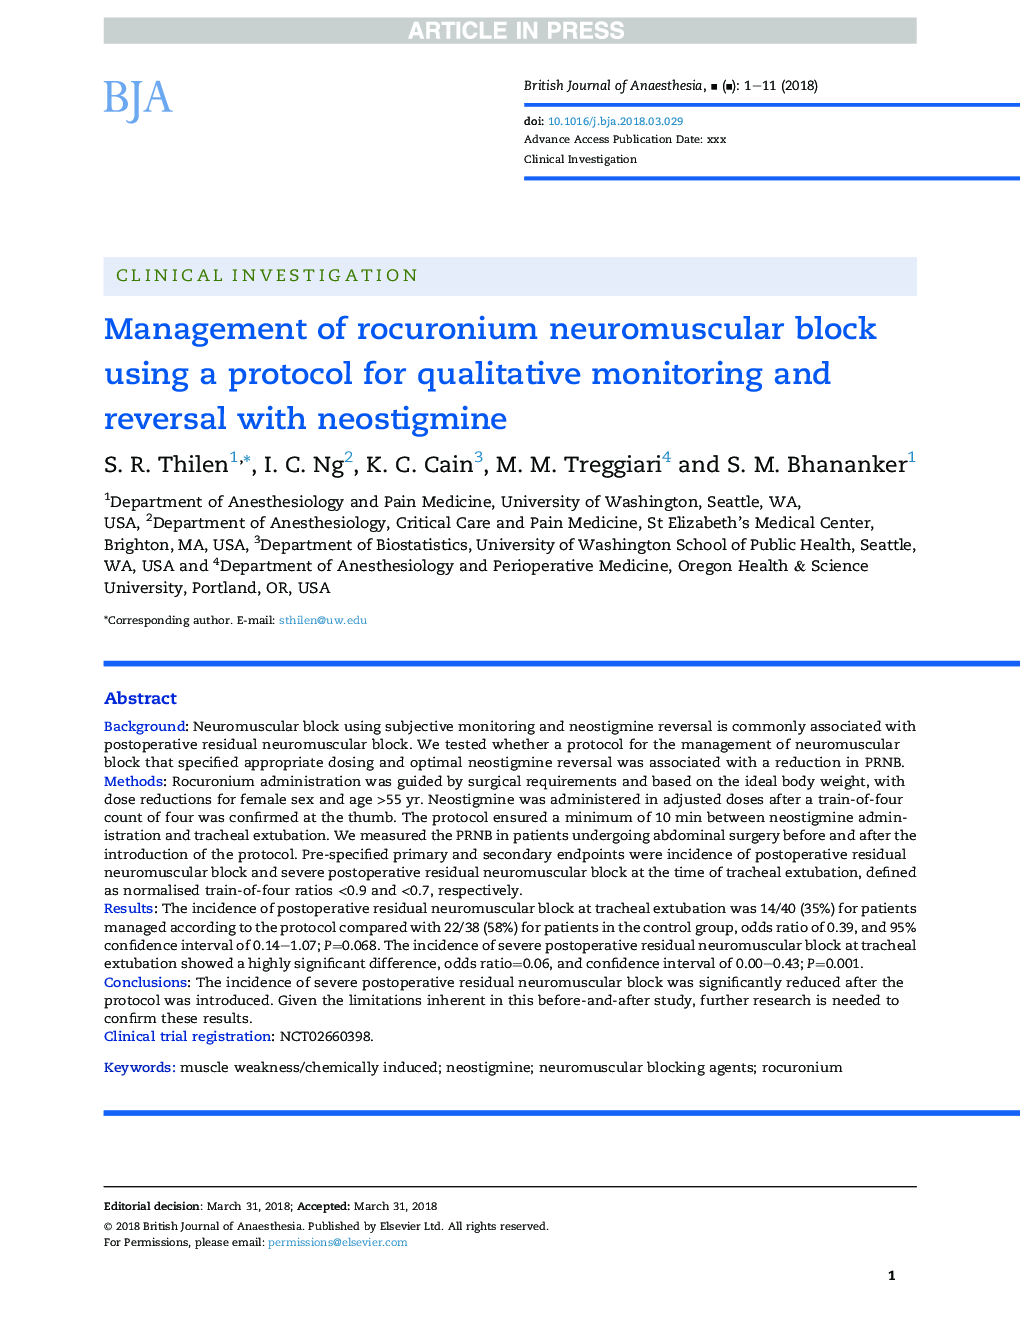 مدیریت بلوک عصبی رکورونیوم با استفاده از یک پروتکل برای نظارت کیفی و معکوس کردن نئوستیگمین